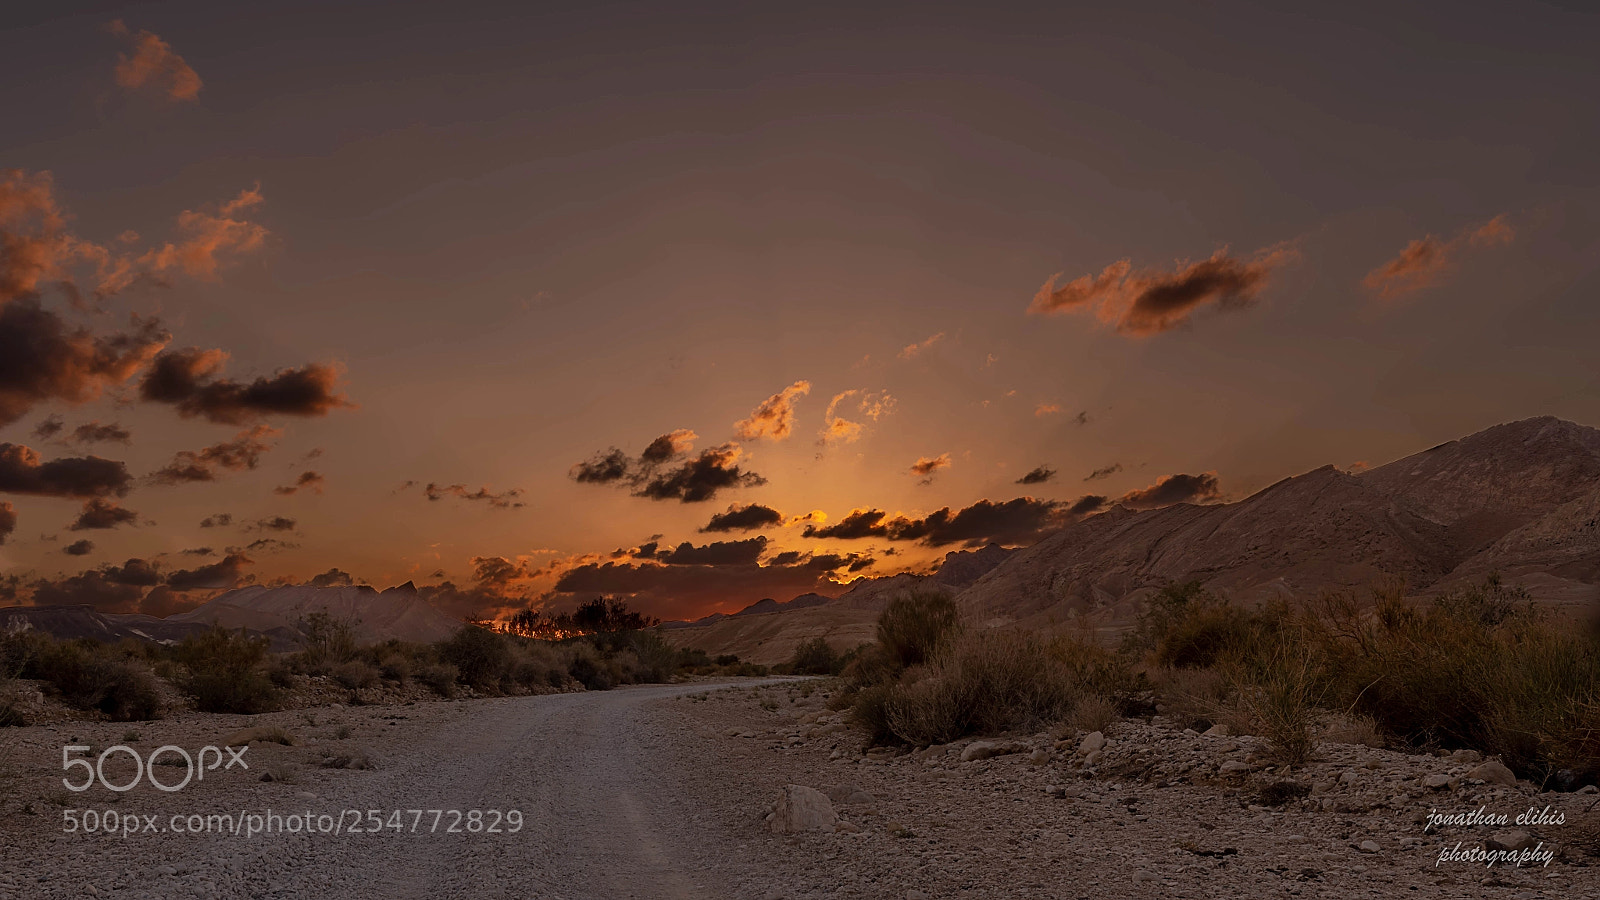 Pentax K-1 sample photo. Desert sunset after a photography